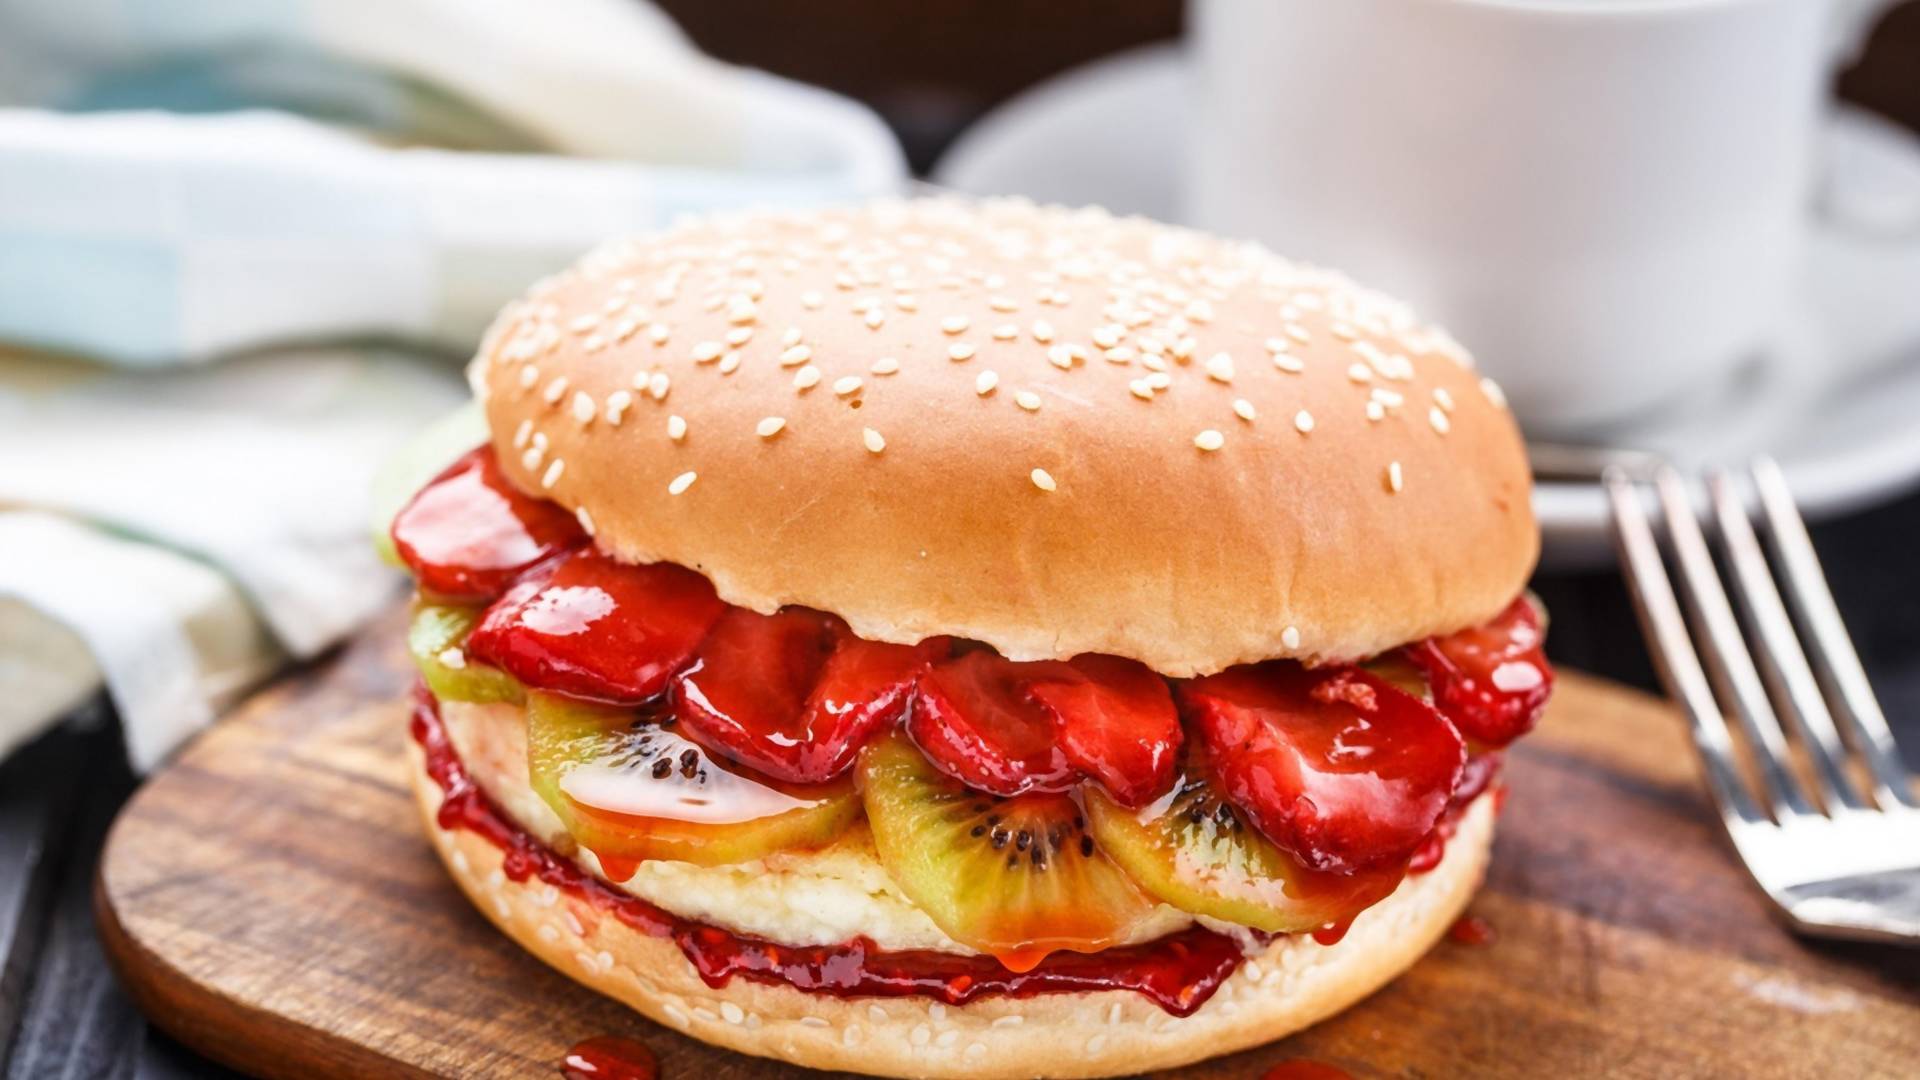 Društvene mreže su preplavljene fotkama slatkih burgera i doslovno su savršeni